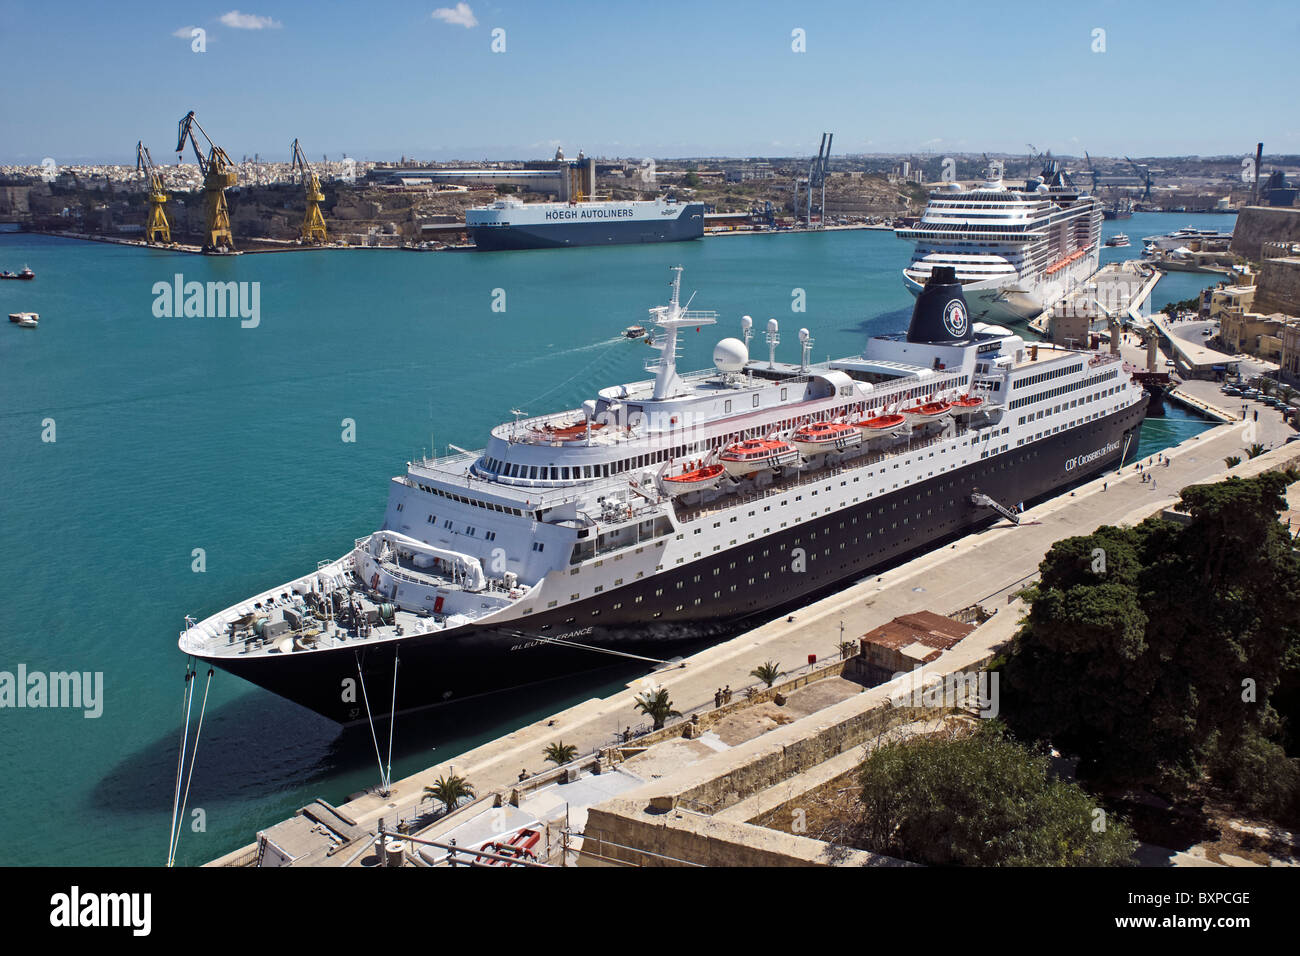 CDF Croisieres De France Kreuzfahrt Schiff Liner MS Bleu De France liegt in den grand Harbour von Valletta auf Malta Stockfoto